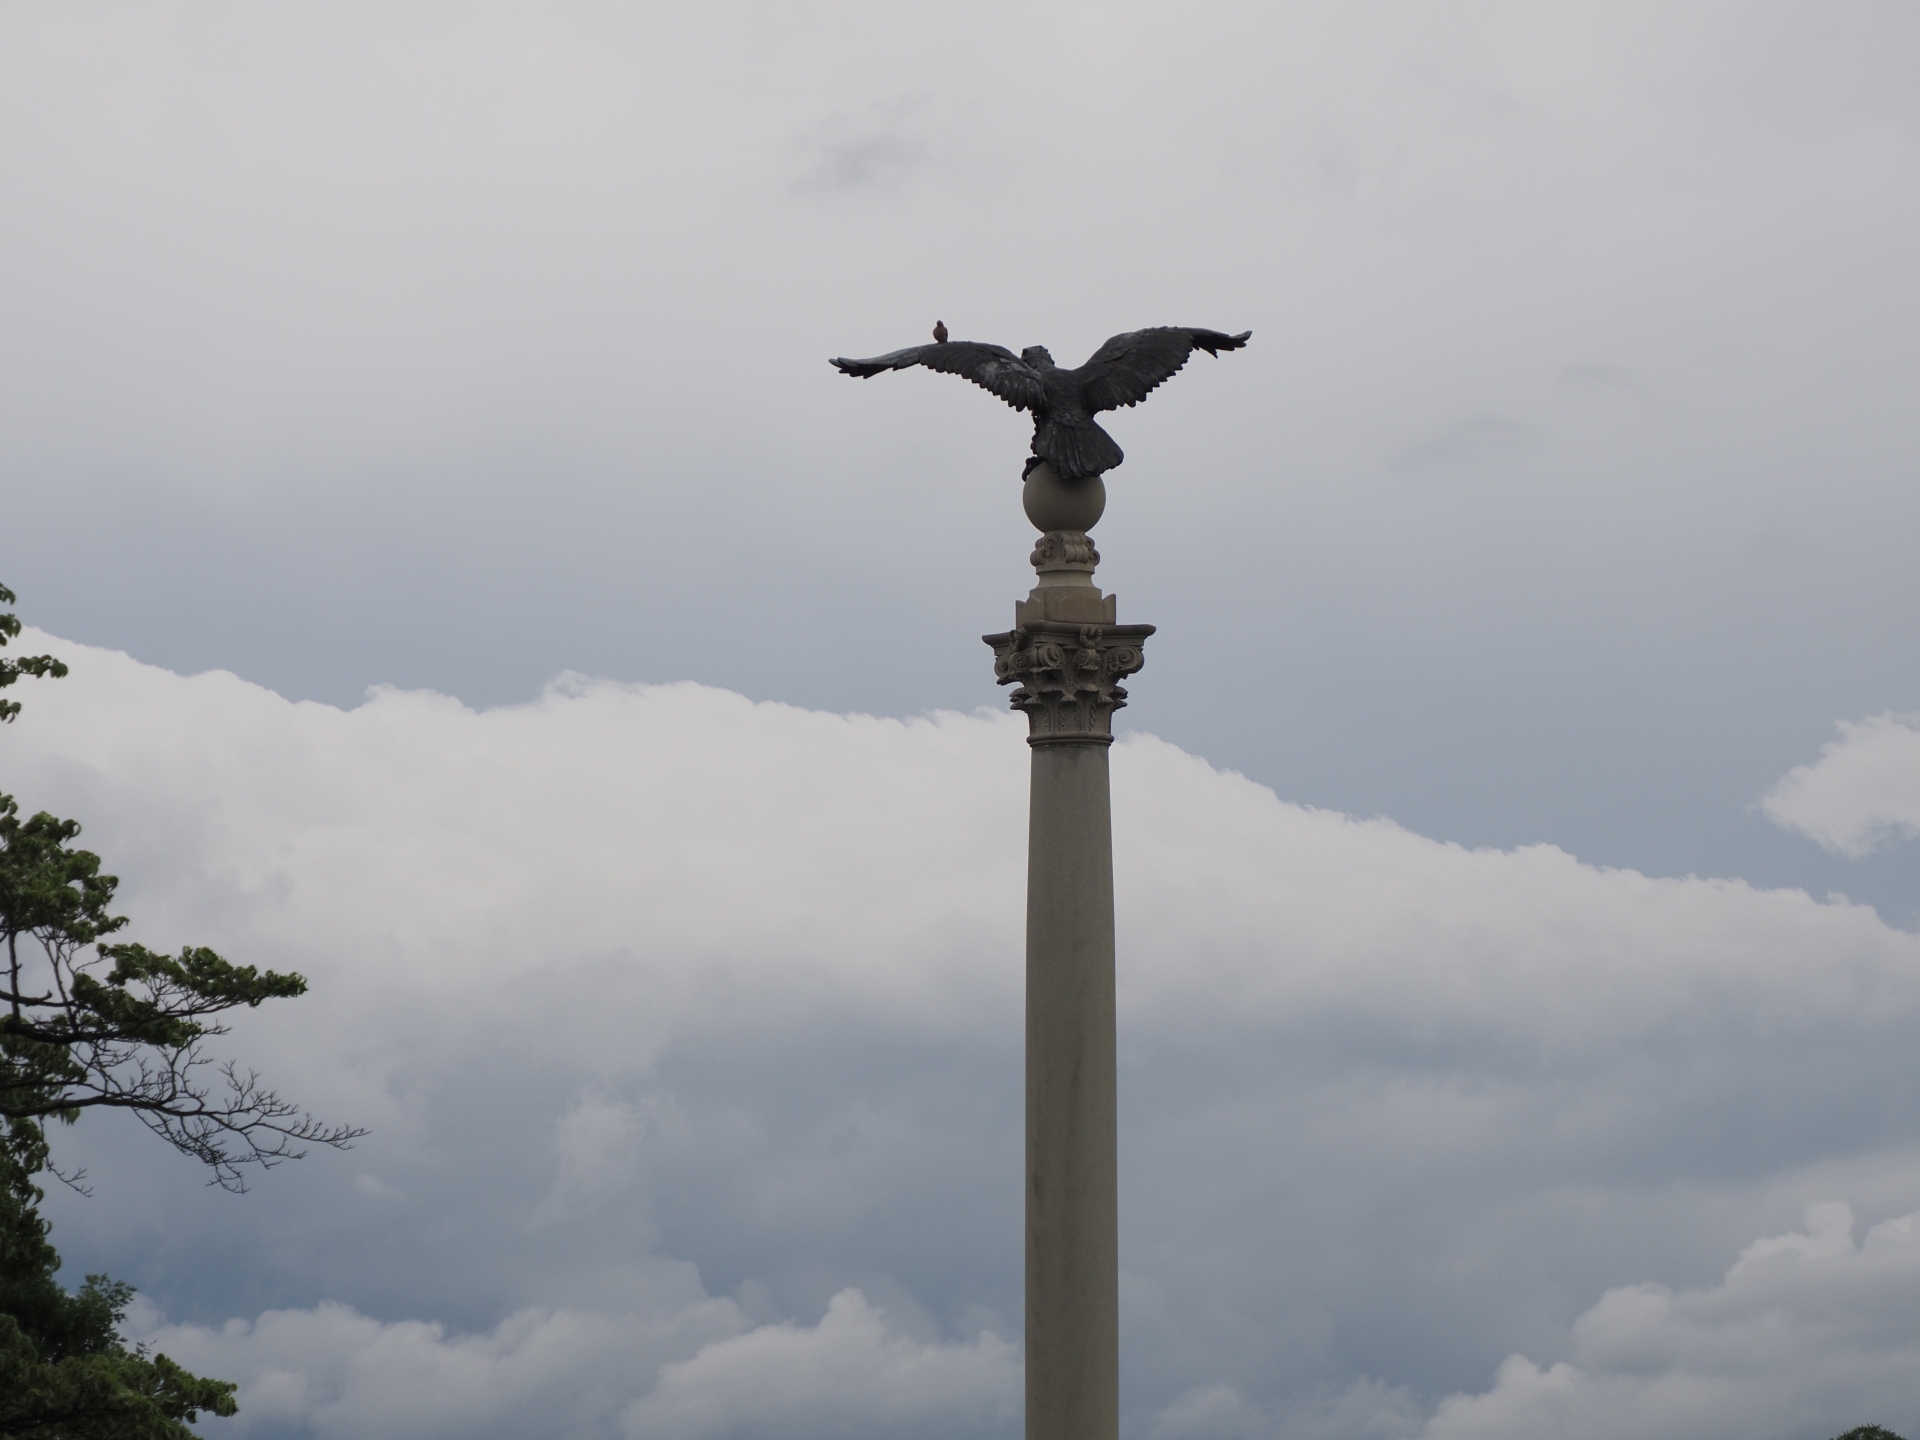 A bird atop one of the Pennsylvania Columns, June 2021